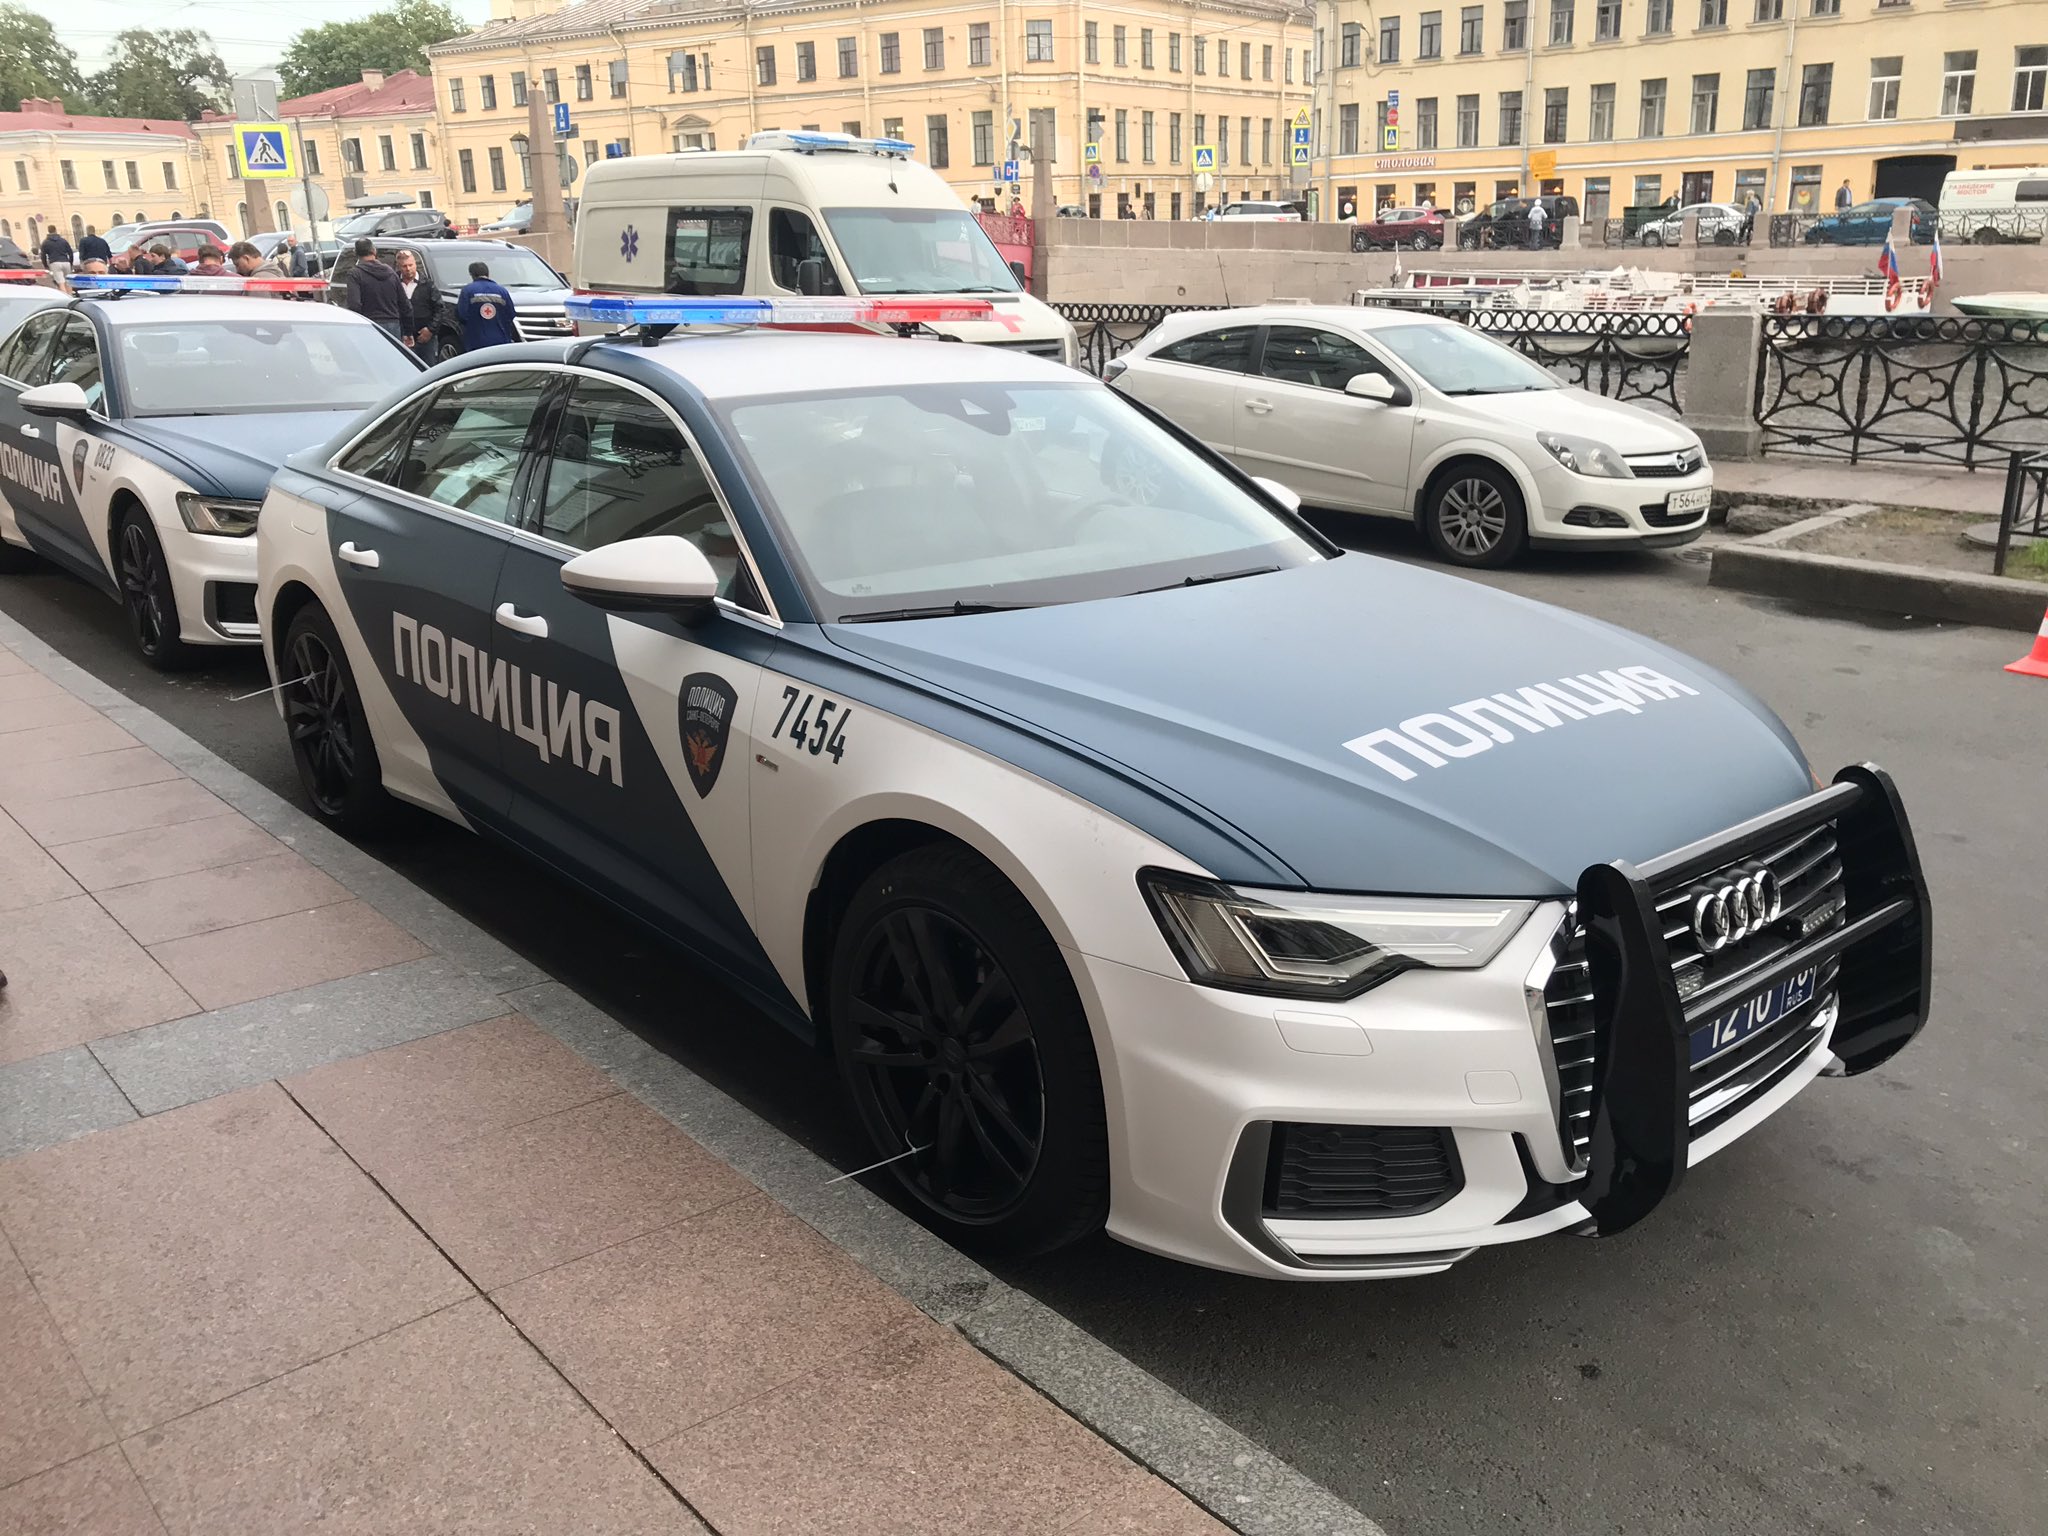 Полицейские машины рублевки. Audi a6 полиция. Полицейская Ауди а6. Audi r8 полиция Санкт-Петербурга. Audi a8 полиция.